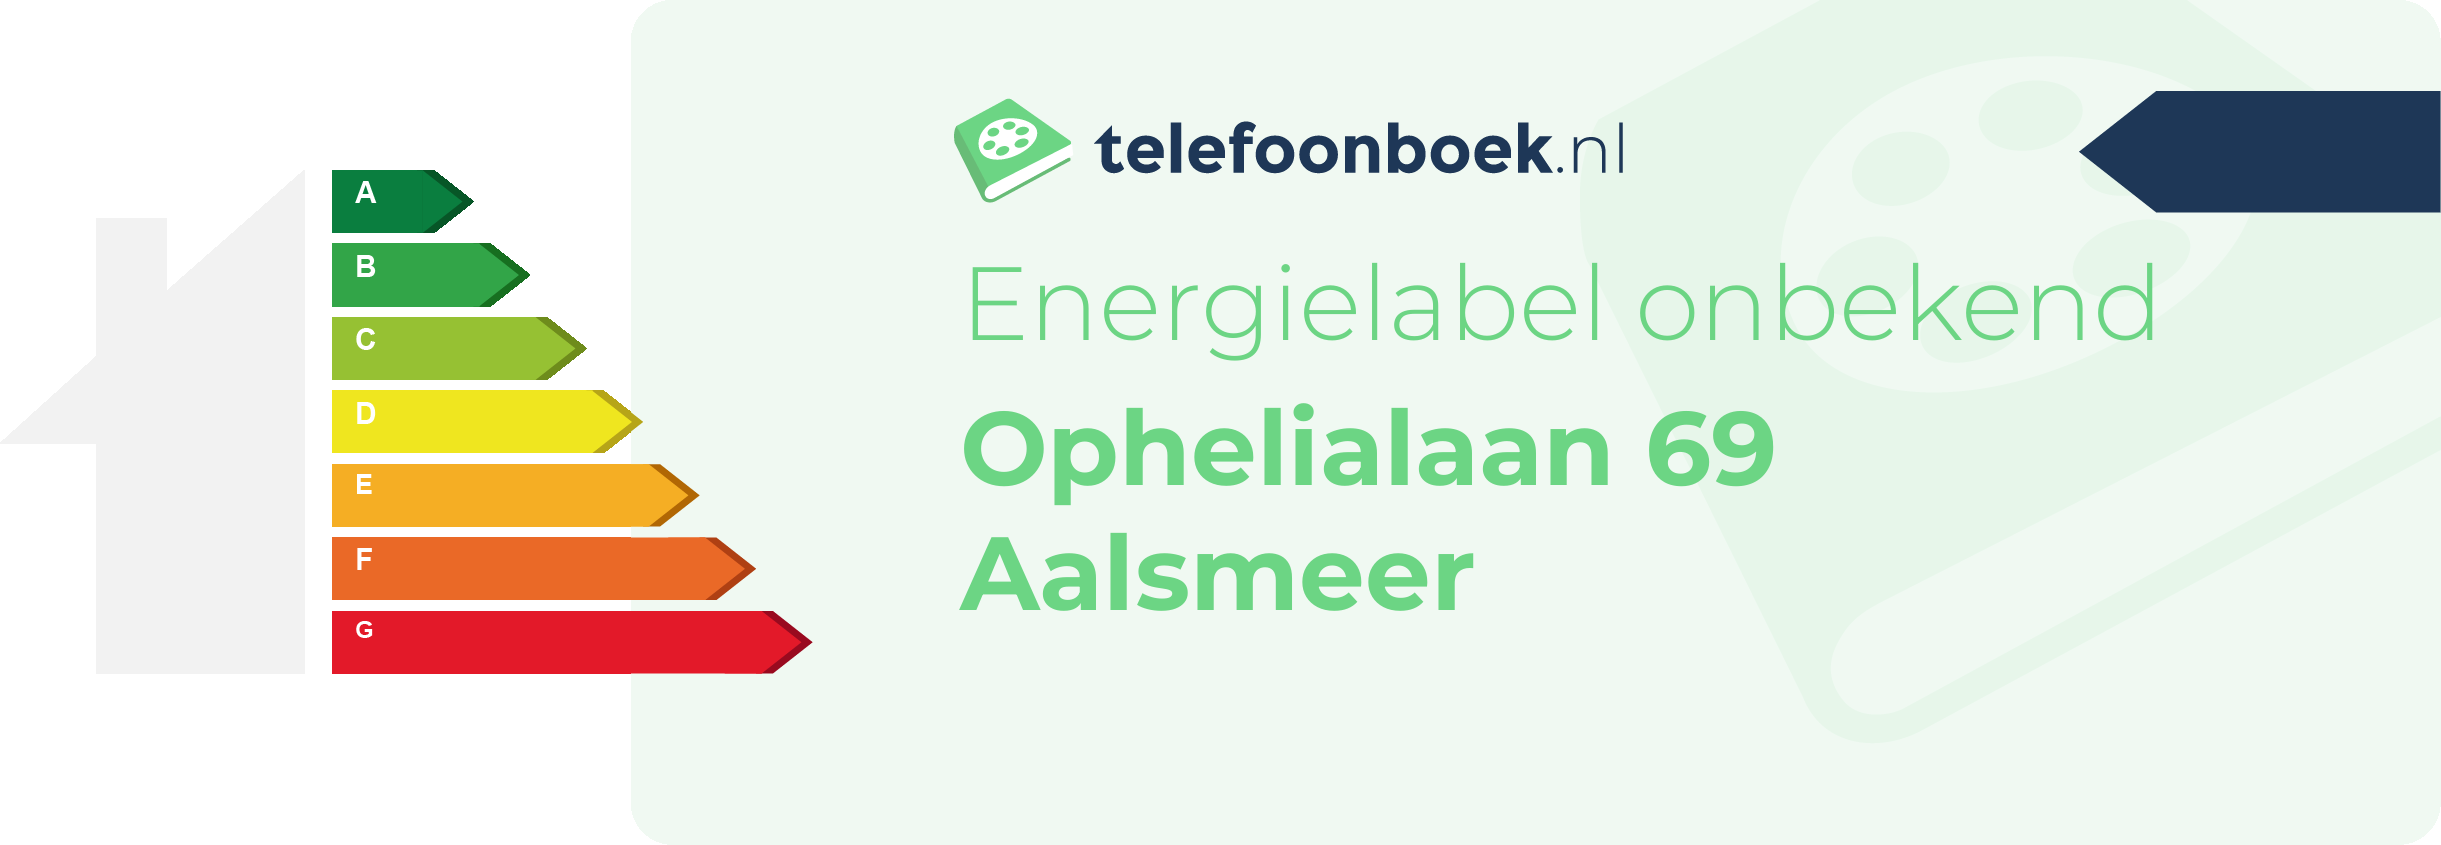 Energielabel Ophelialaan 69 Aalsmeer